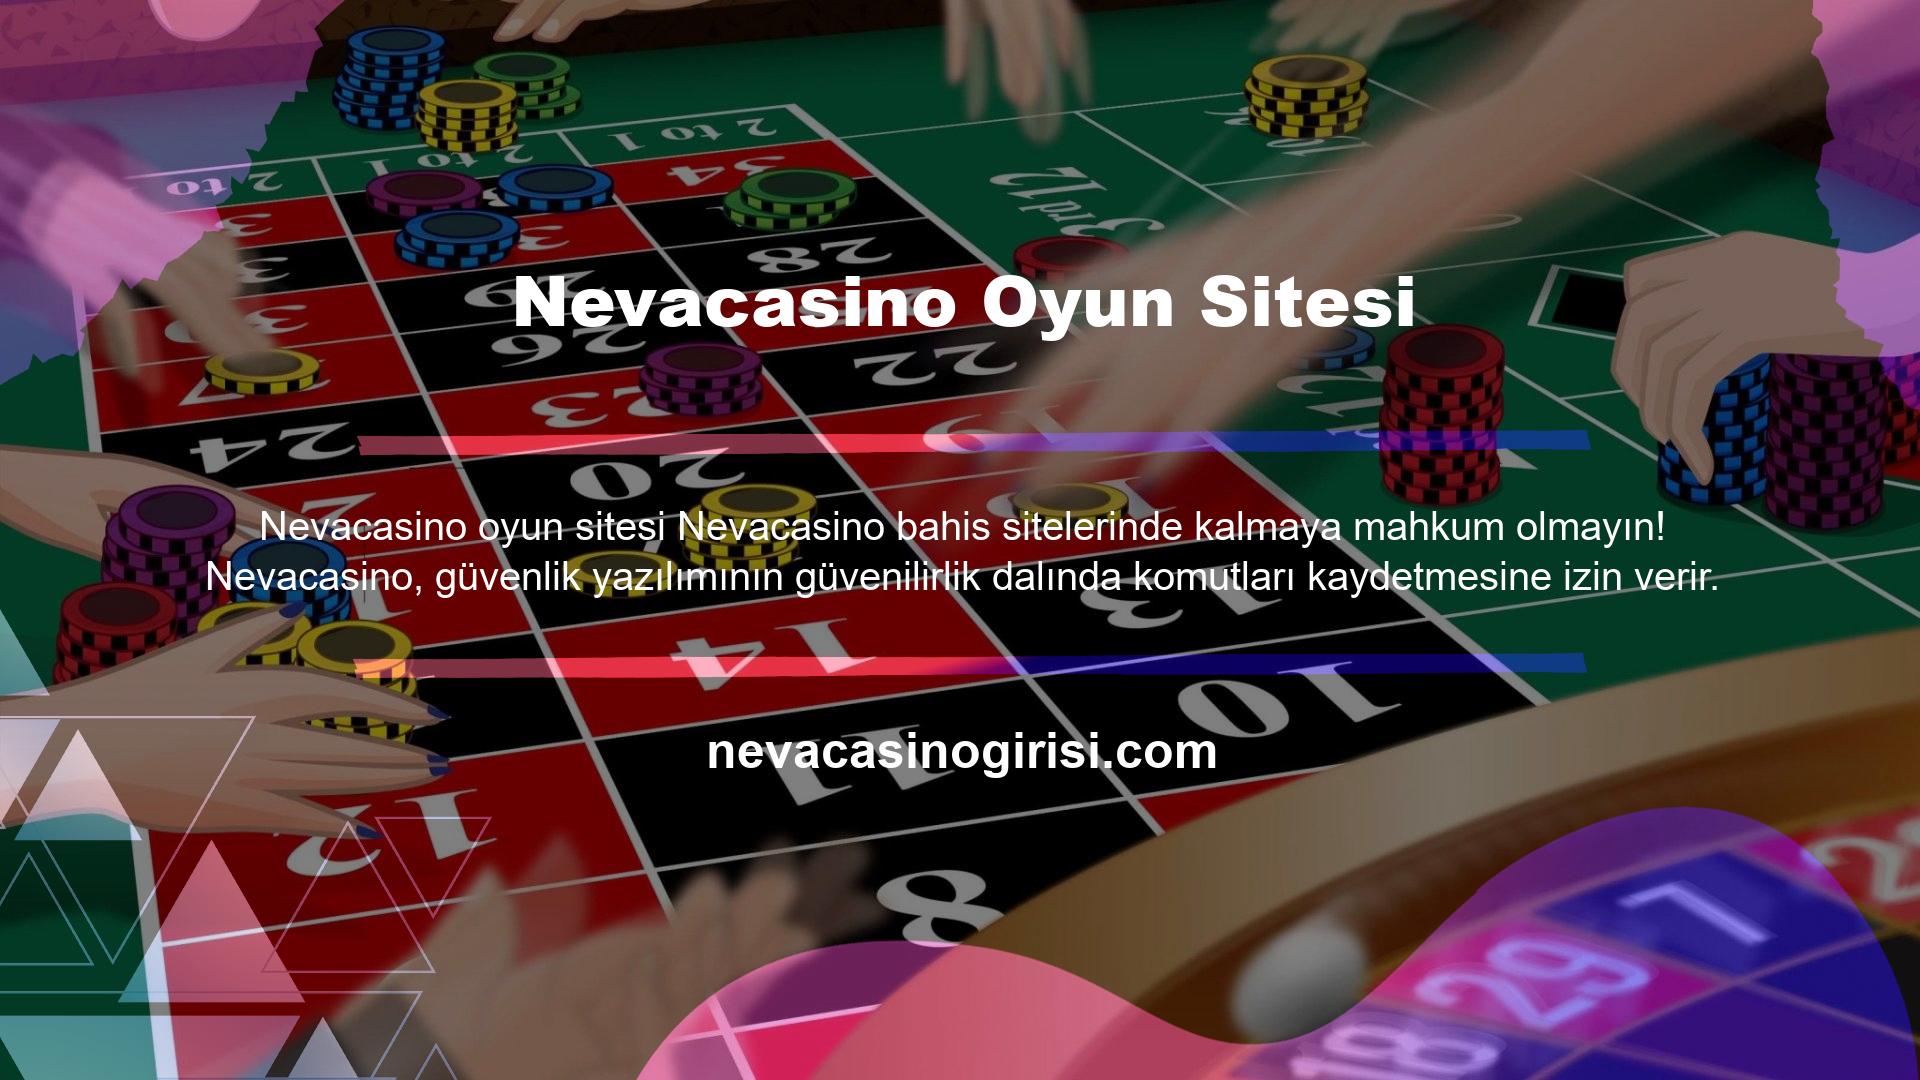 Nevacasino, birçok farklı oyunu izleyebileceğiniz bir ortamla en güçlü casino hizmetlerini sunar